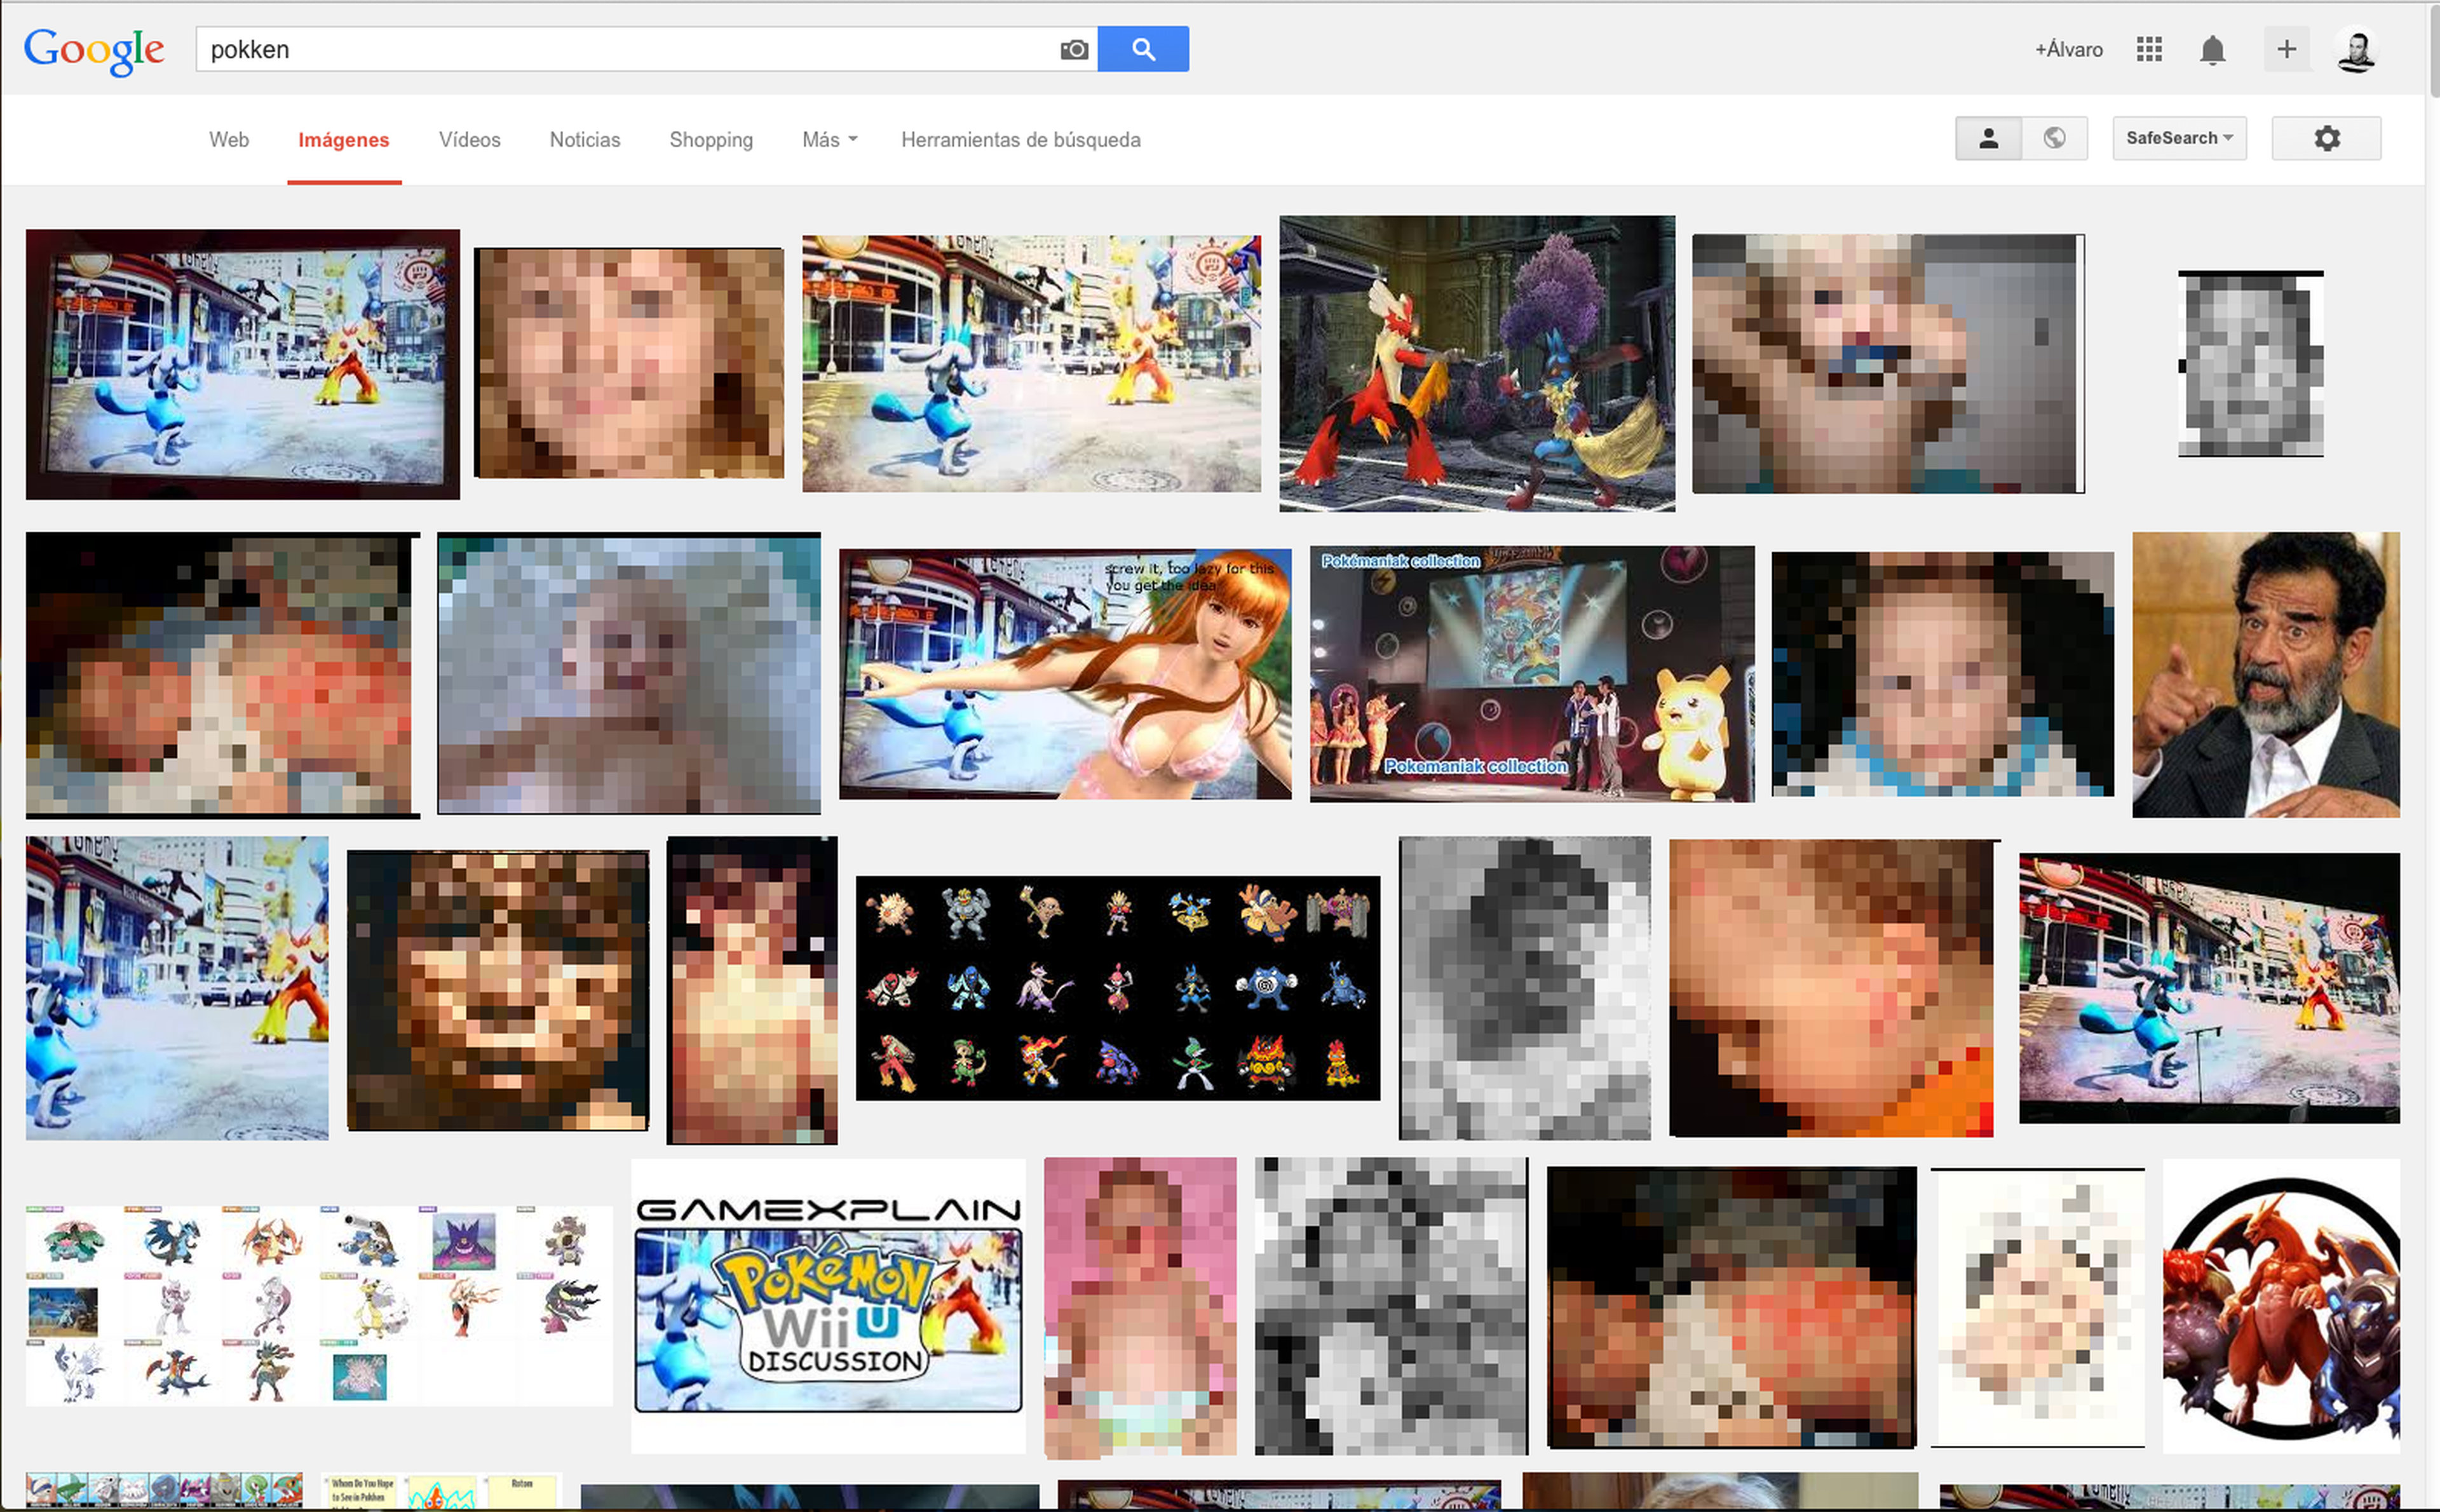 No deberíais buscar imágenes de "Pokken" en Google...